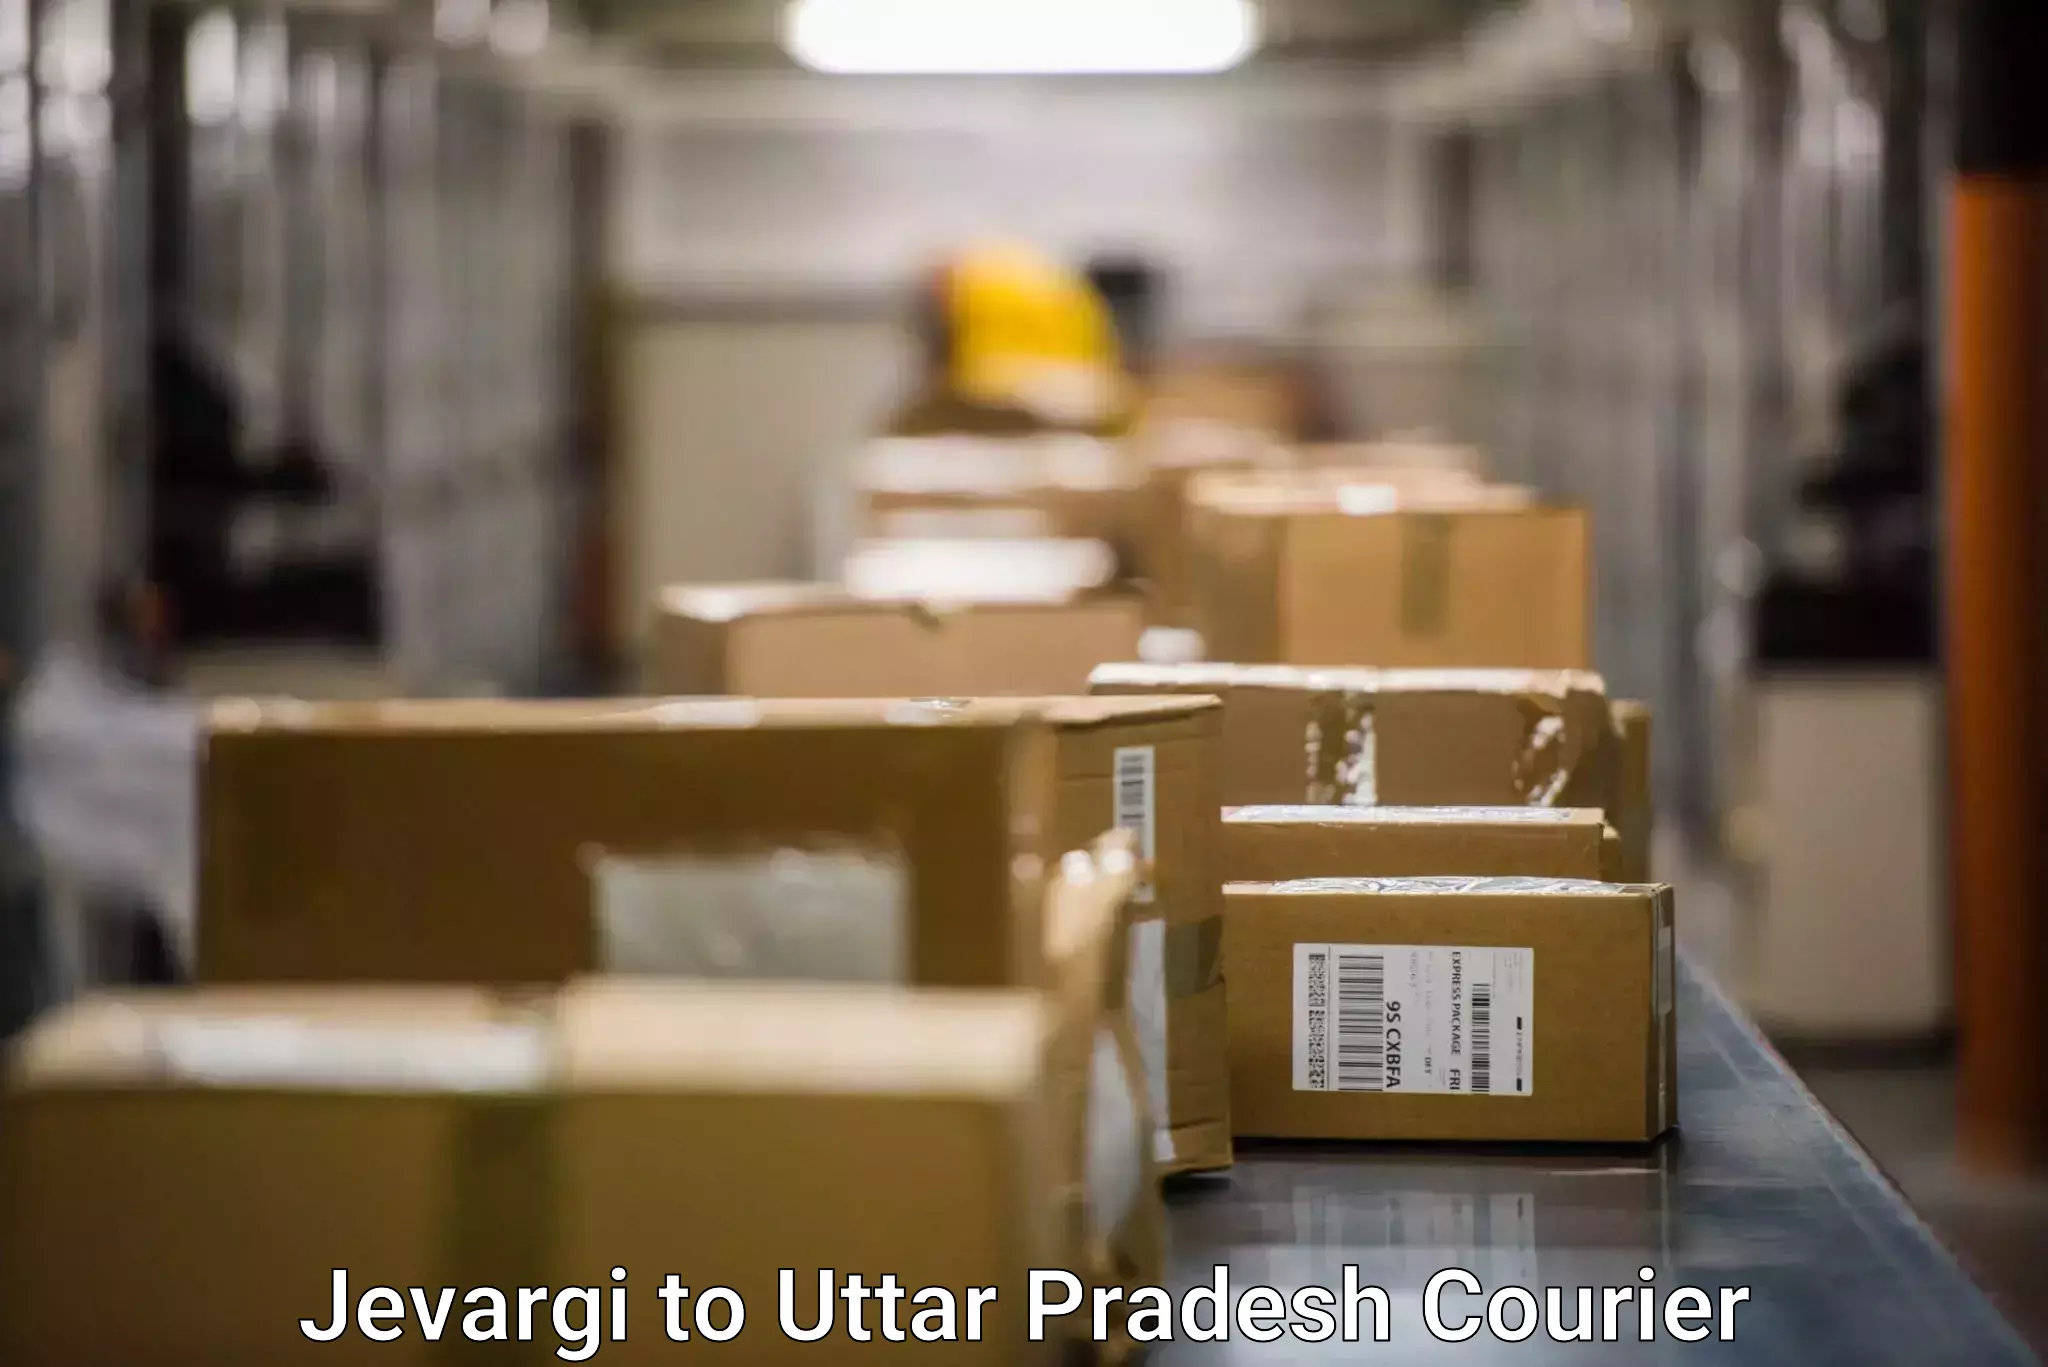 High-capacity parcel service Jevargi to Salemgarh